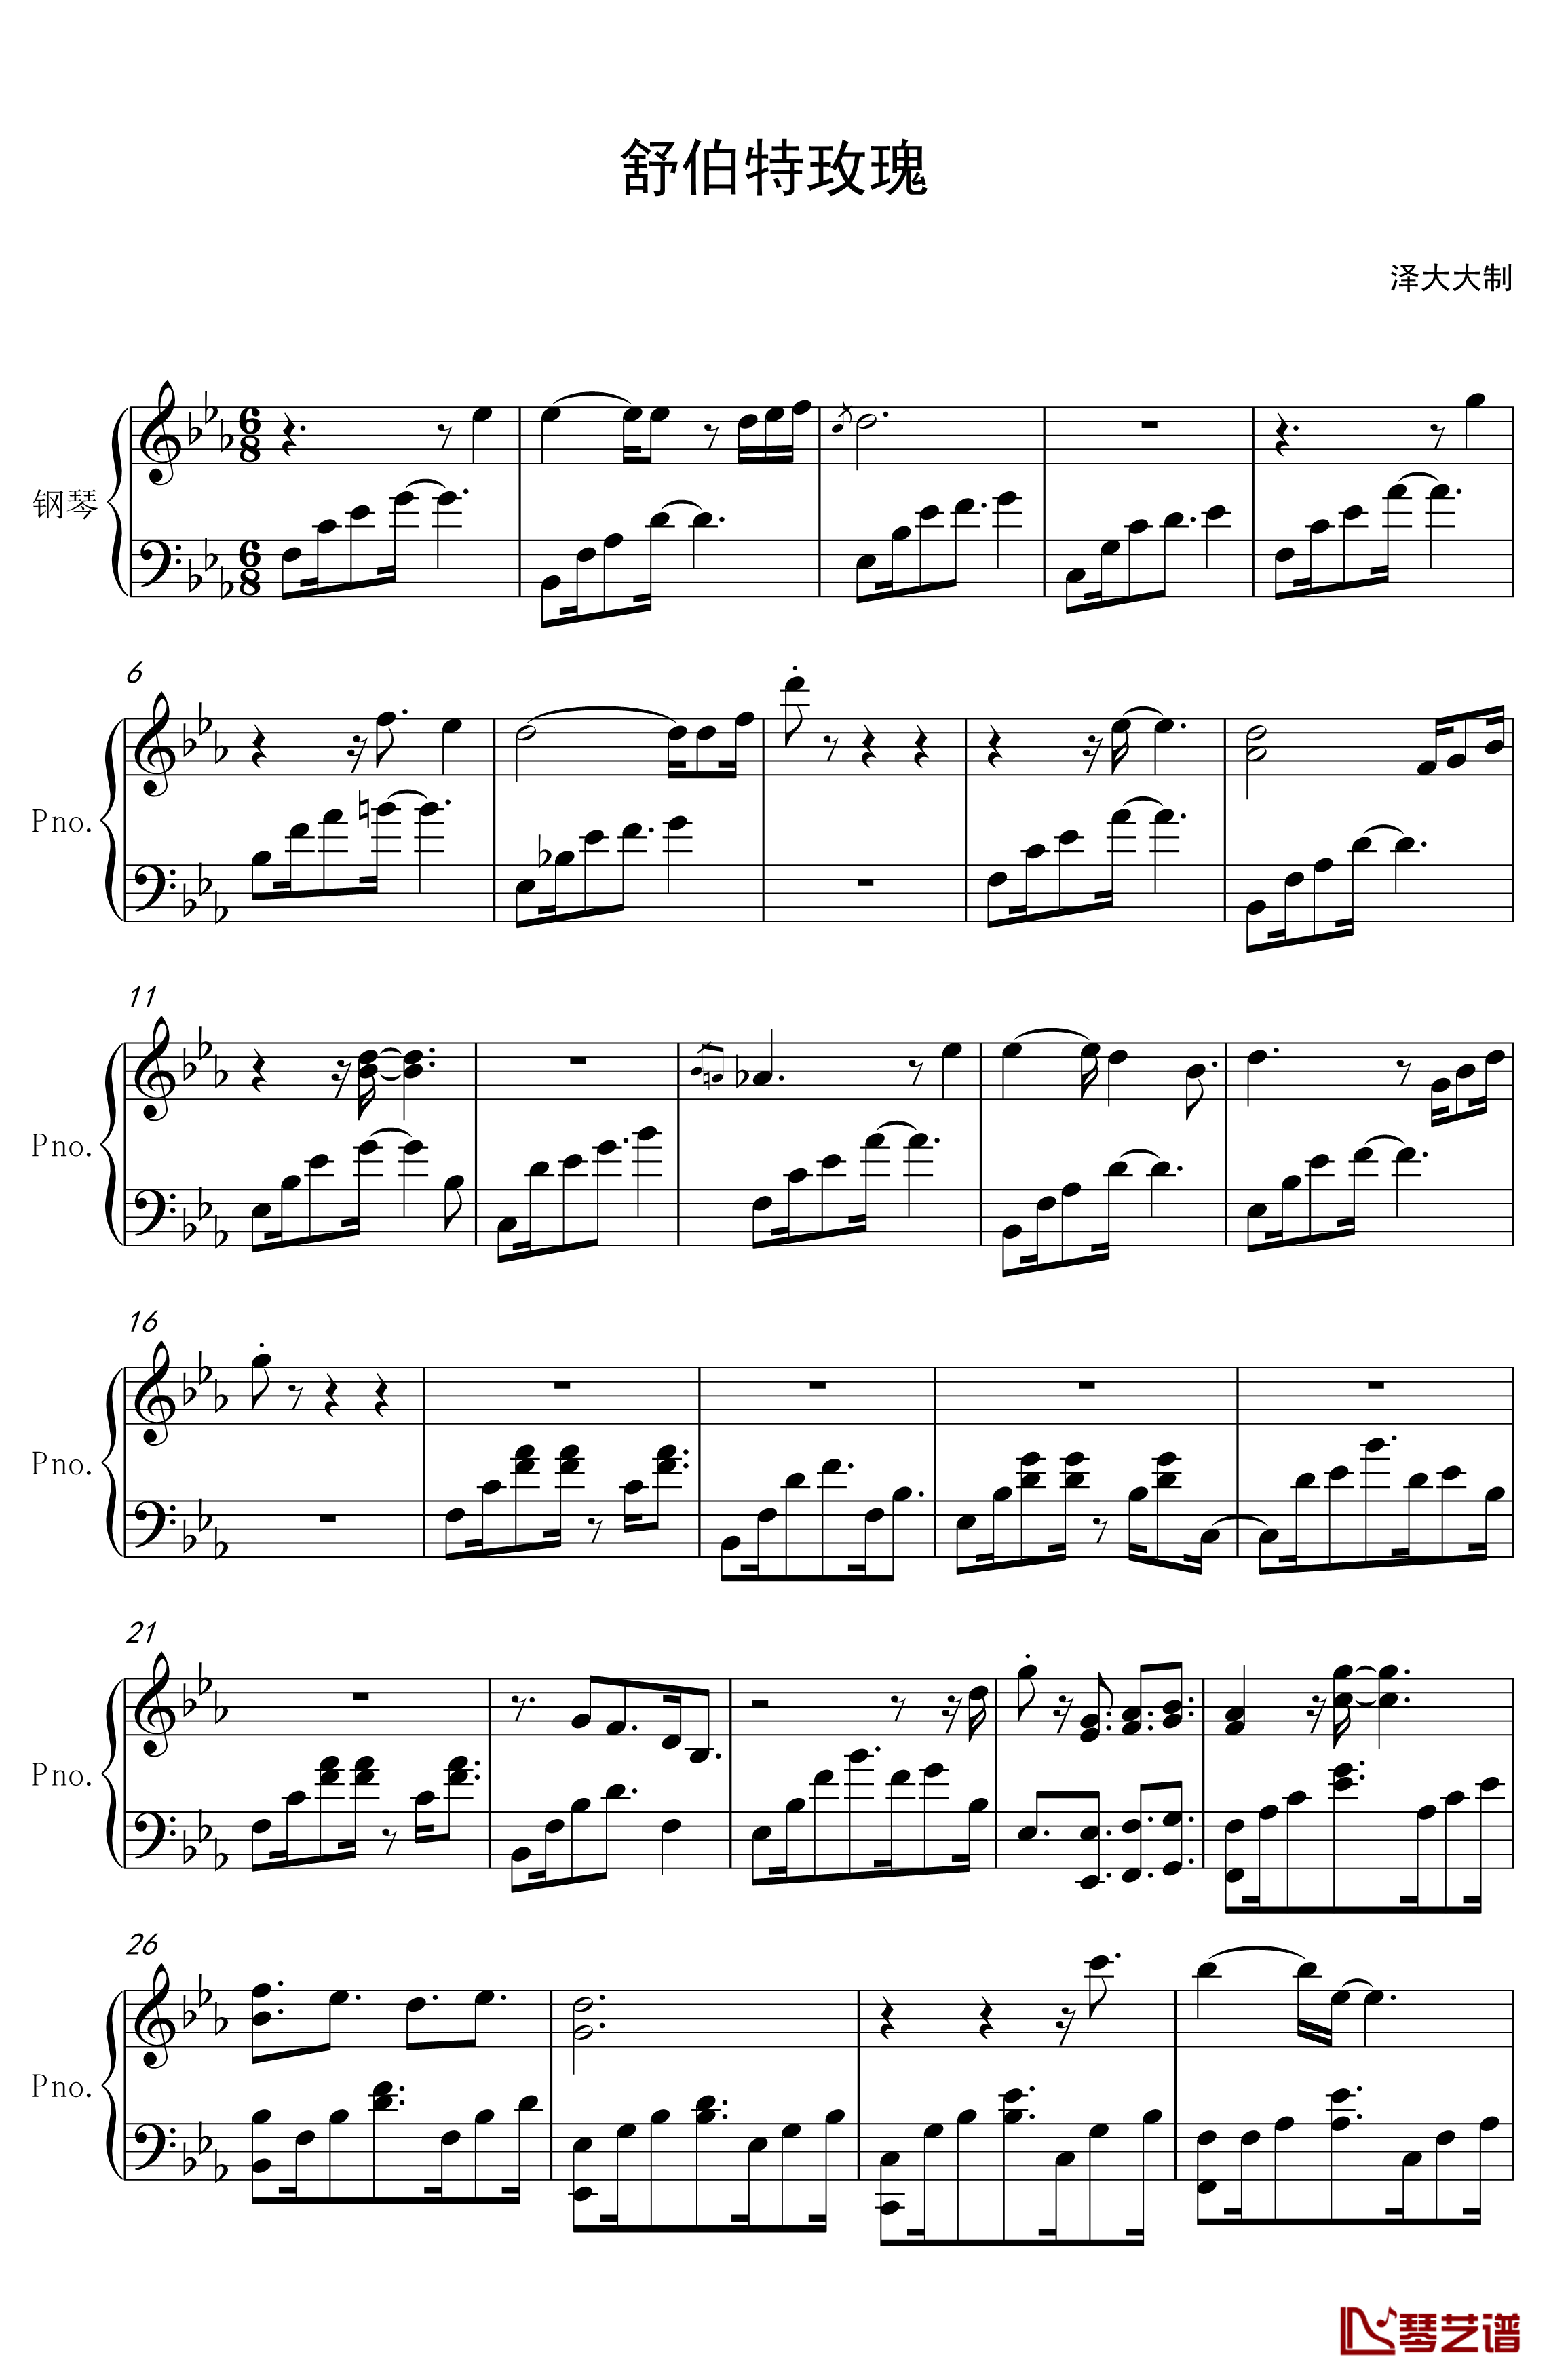 舒伯特玫瑰钢琴谱-钢琴伴奏版-蓝心羽1